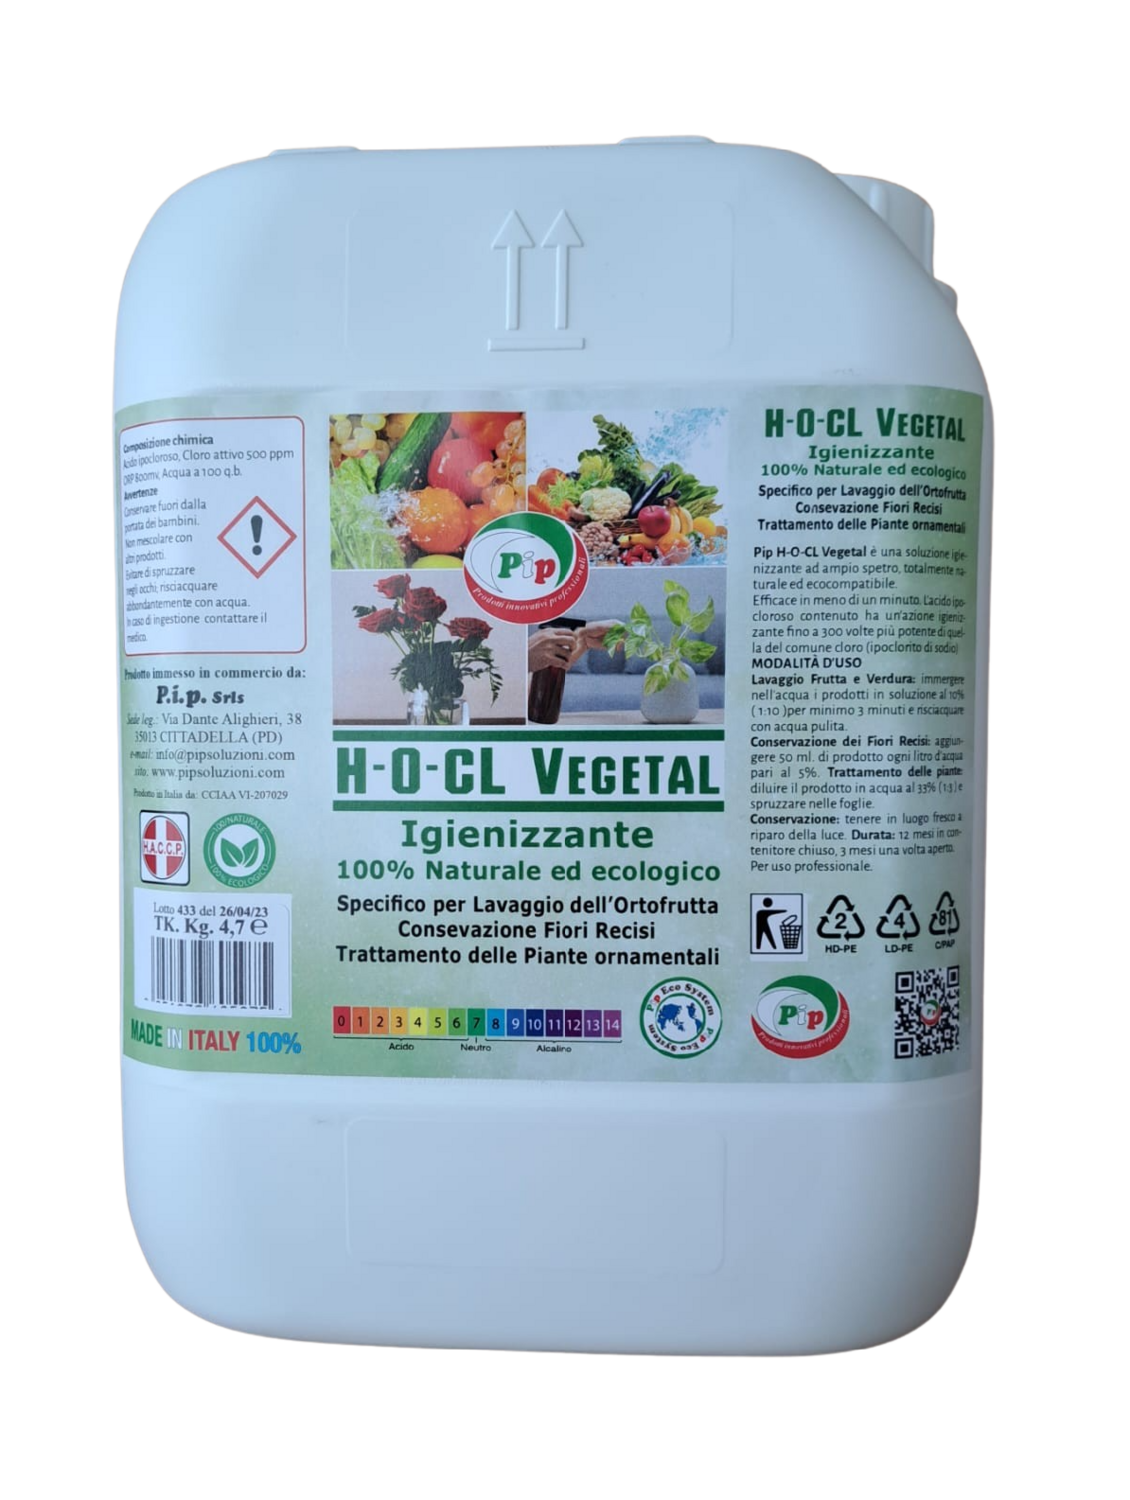 PIP Detergente Igienizzante 100% Naturale ed Ecologico Superconcetrato H-O-CL Vegetal, TK. UN. KG.4,7 - Specifico per il lavaggio dell'ortofrutta, conservazione fiori recisi e piante ornamentali.